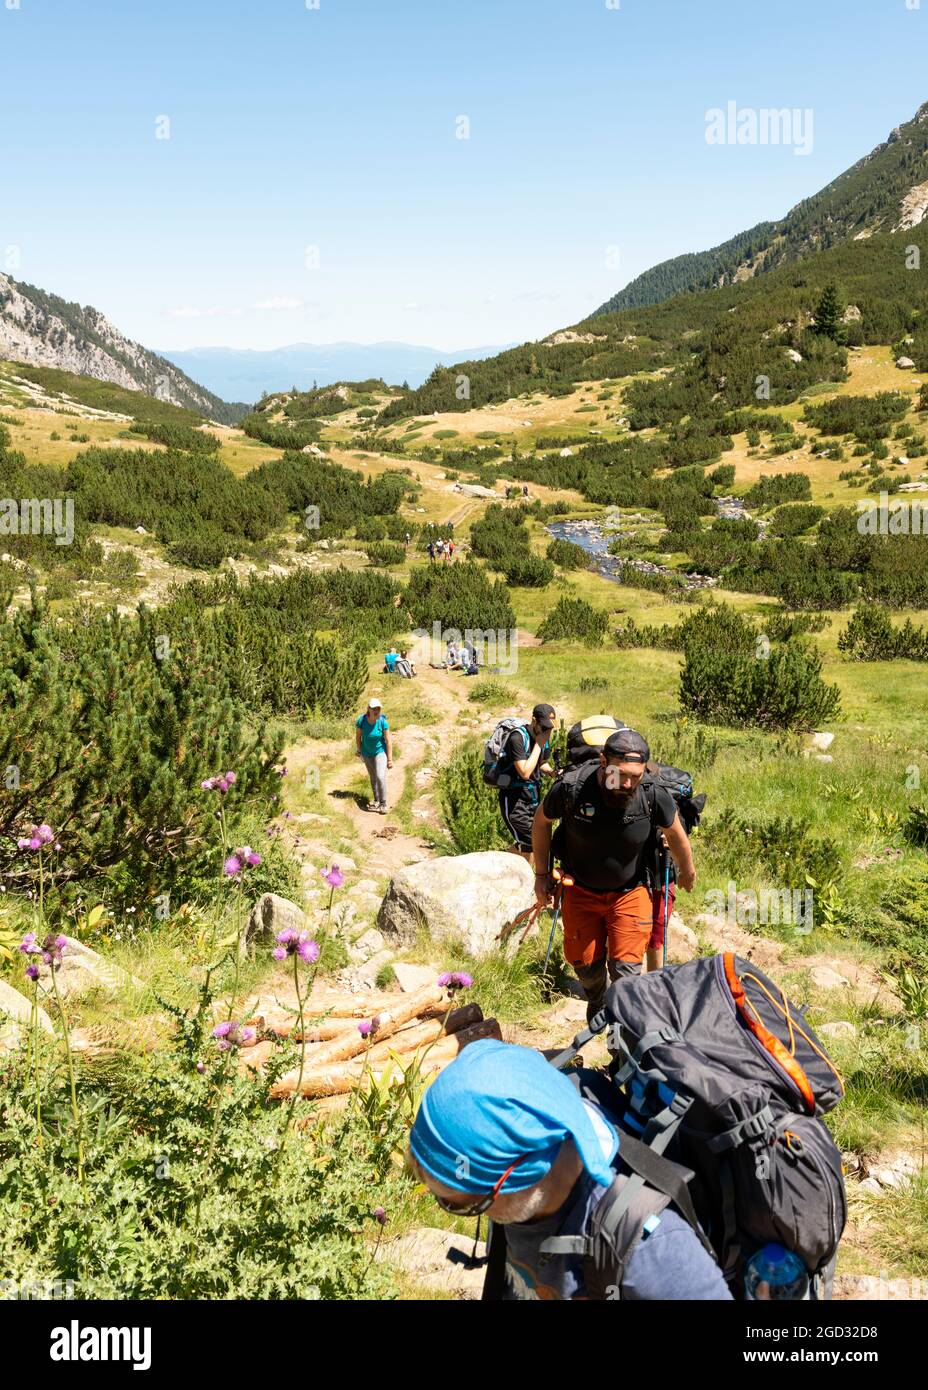 Randonnée en Bulgarie. Randonneurs sur sentier de randonnée dans la vallée de la rivière Banderitsa dans le parc national et réserve de Pirin, montagne de Pirin, Bulgarie, Balkans, Europe Banque D'Images